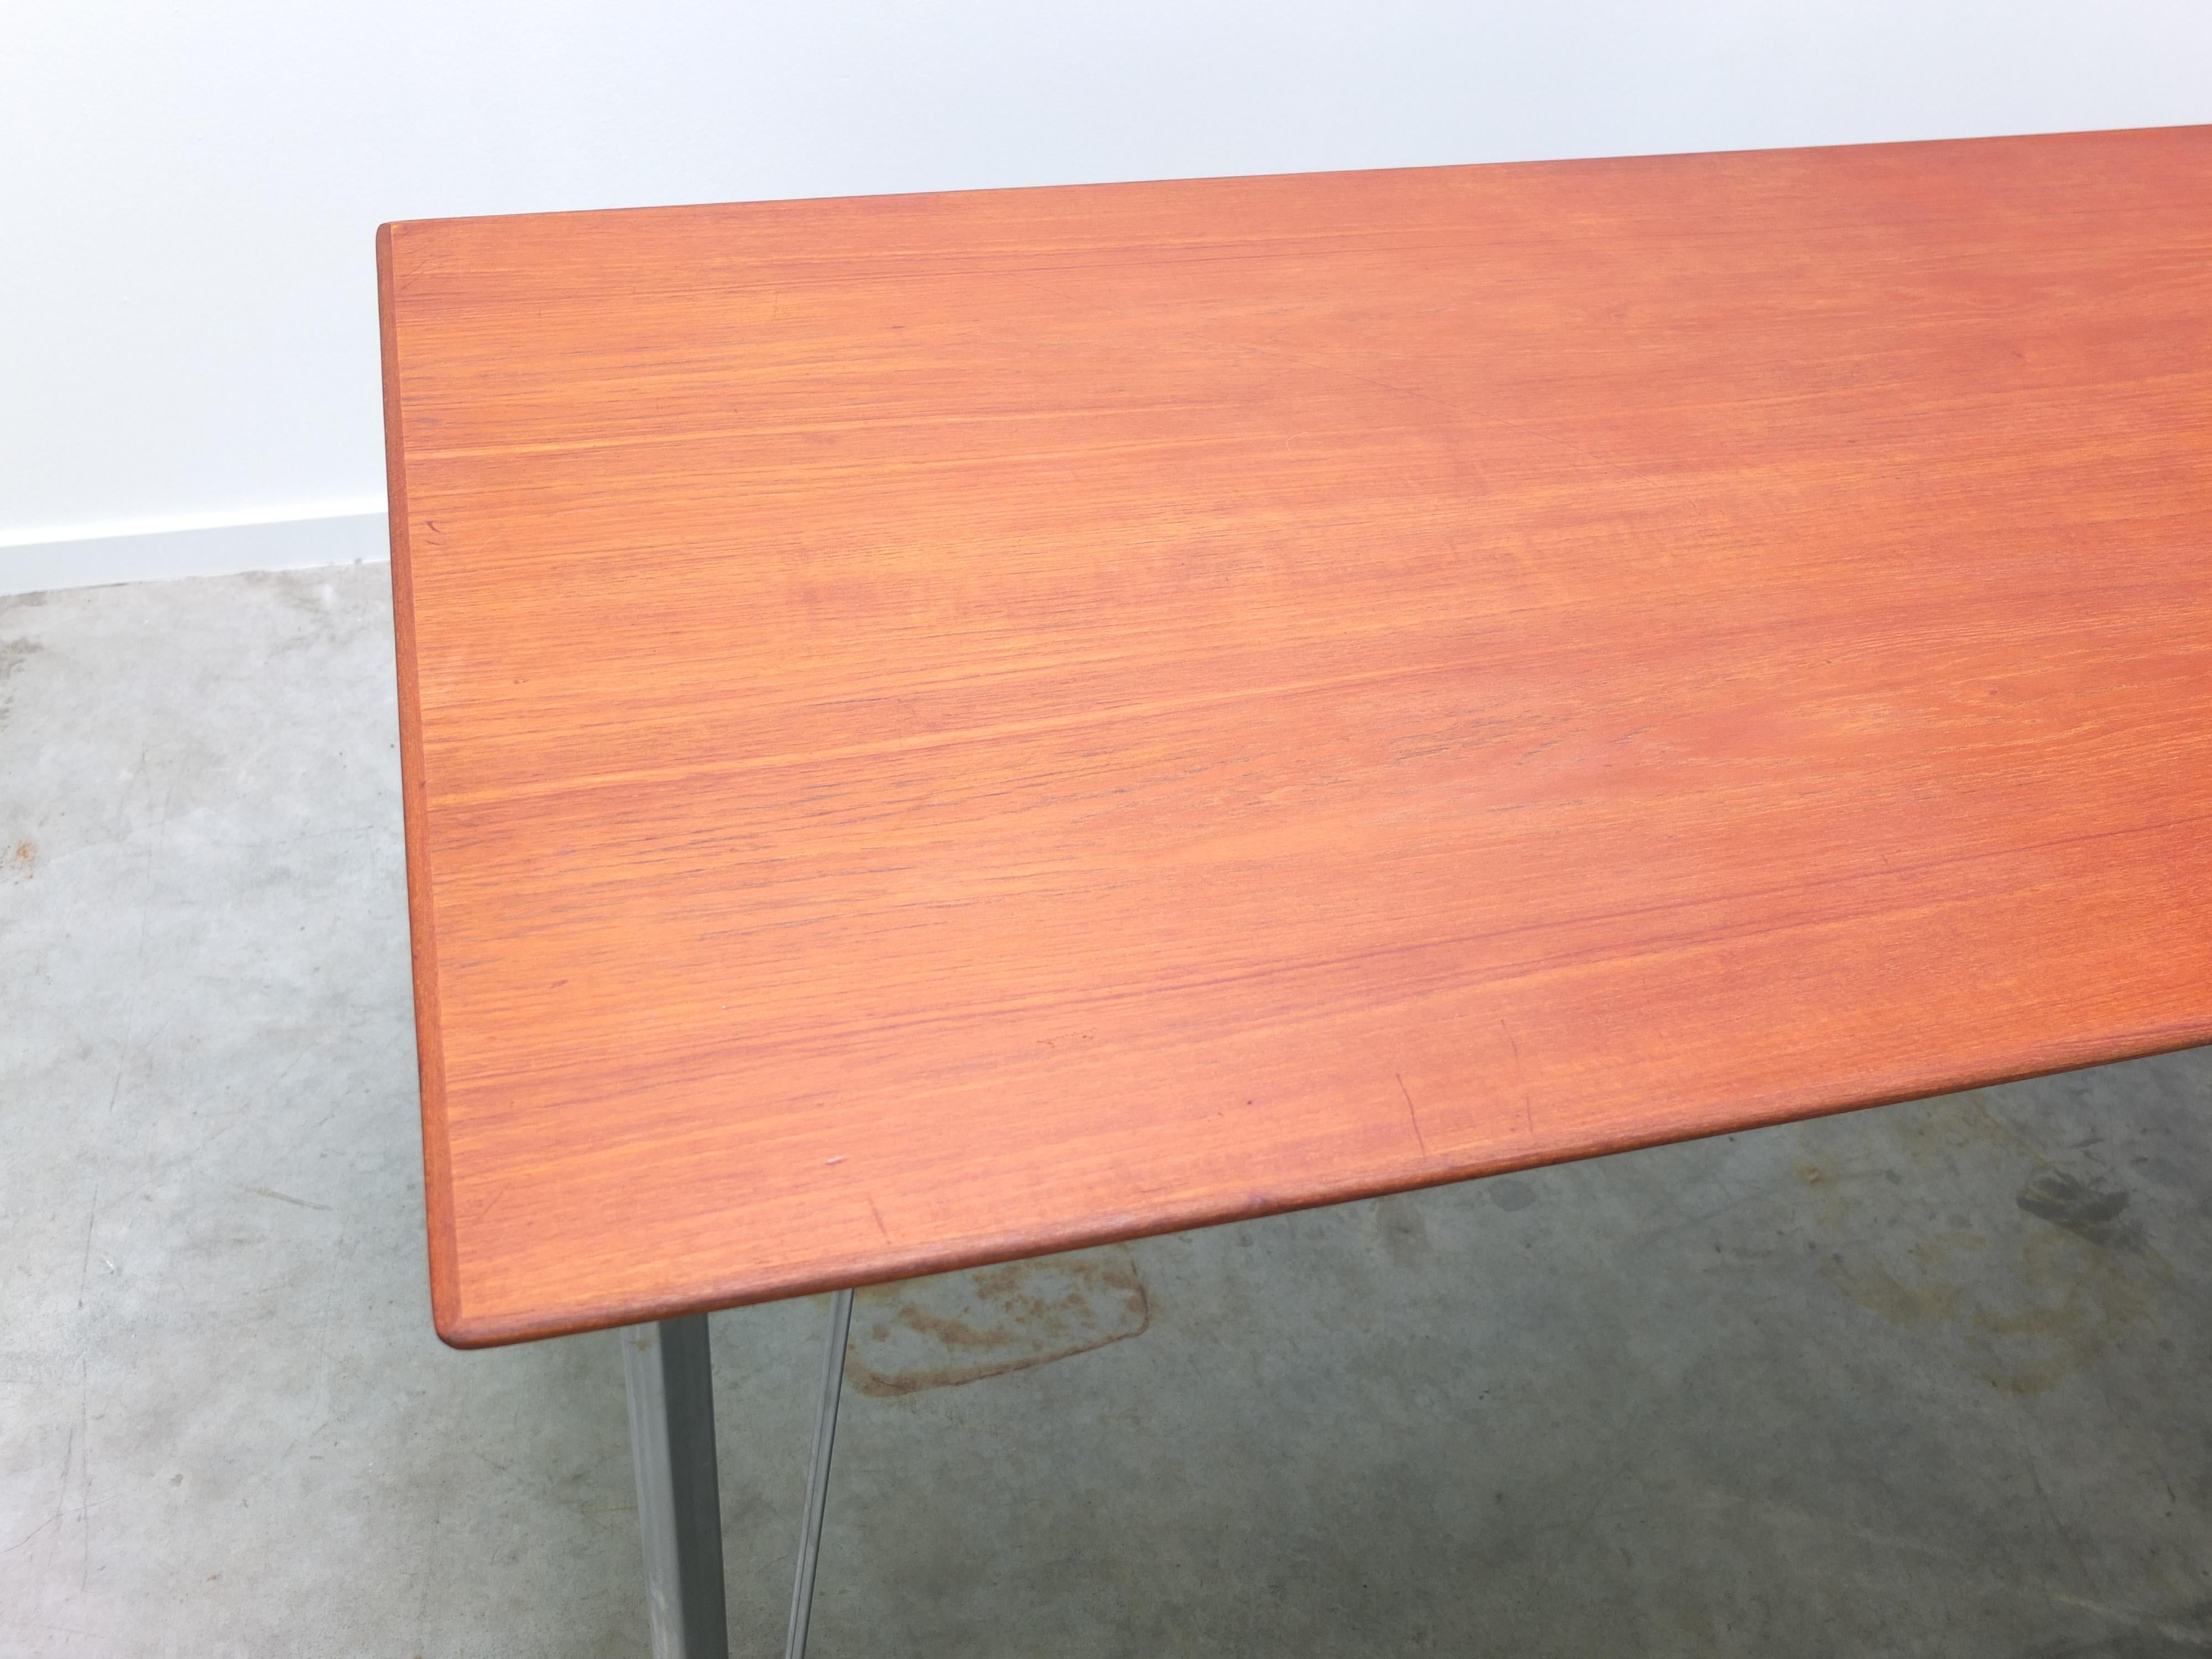 20th Century Early Teak 'Model 3605' Table by Arne Jacobsen for Fritz Hansen, 1950s For Sale